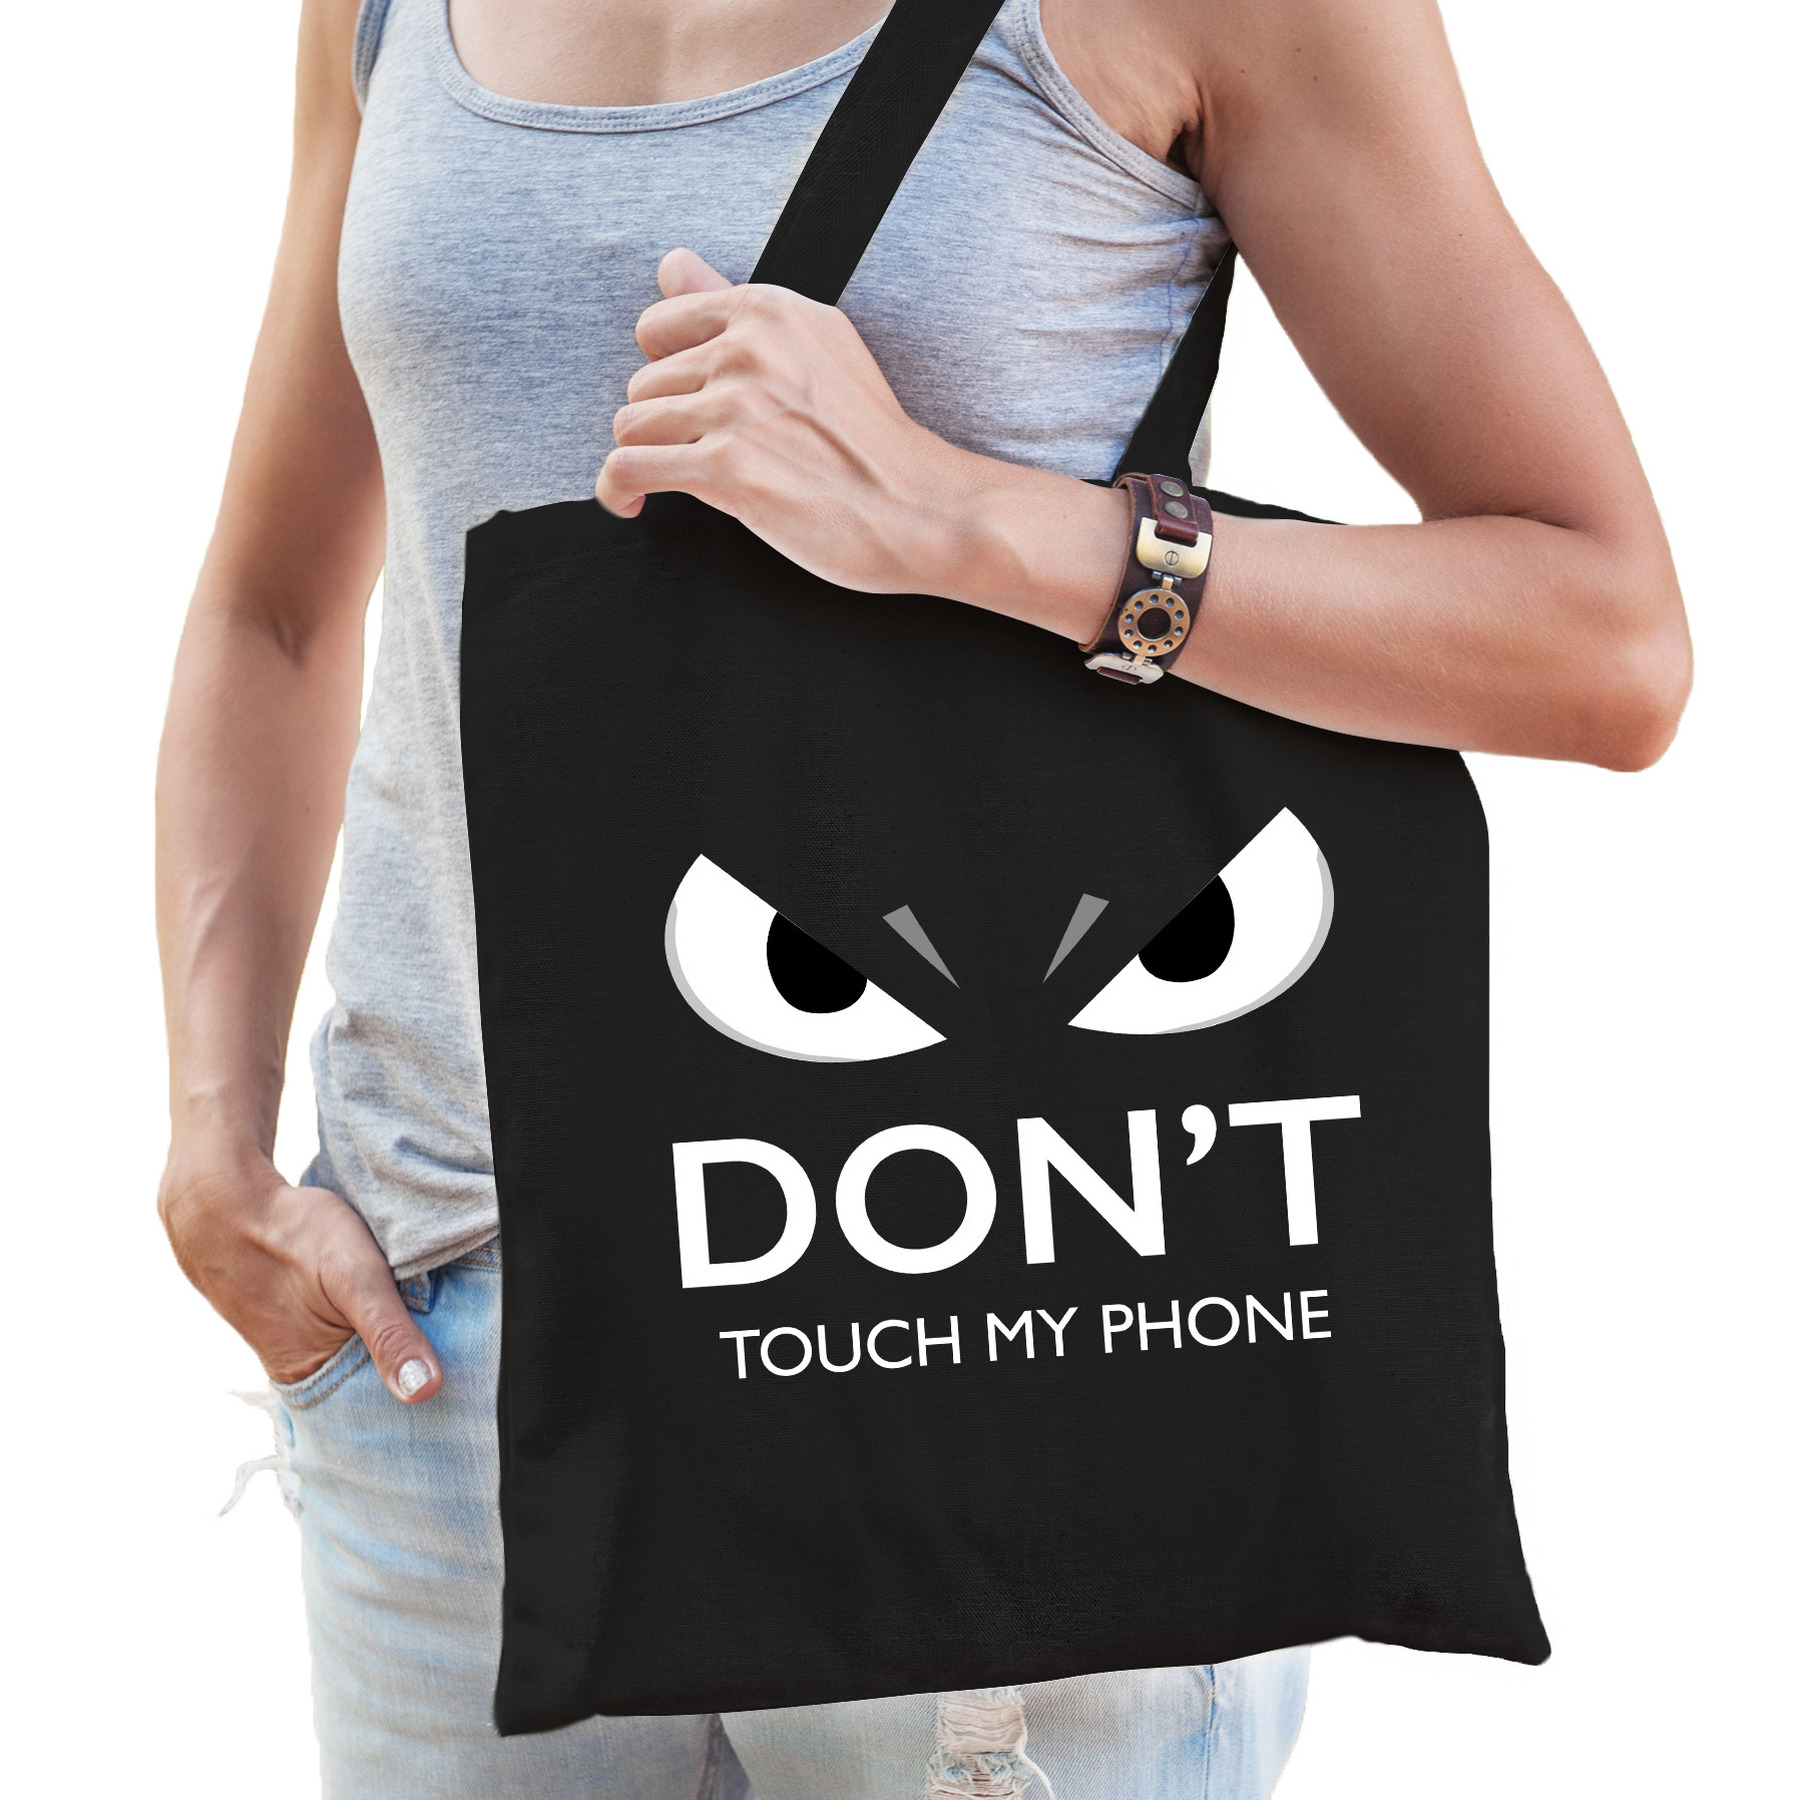 Dont touch telefoon cadeau katoenen tas zwart voor volwassenen